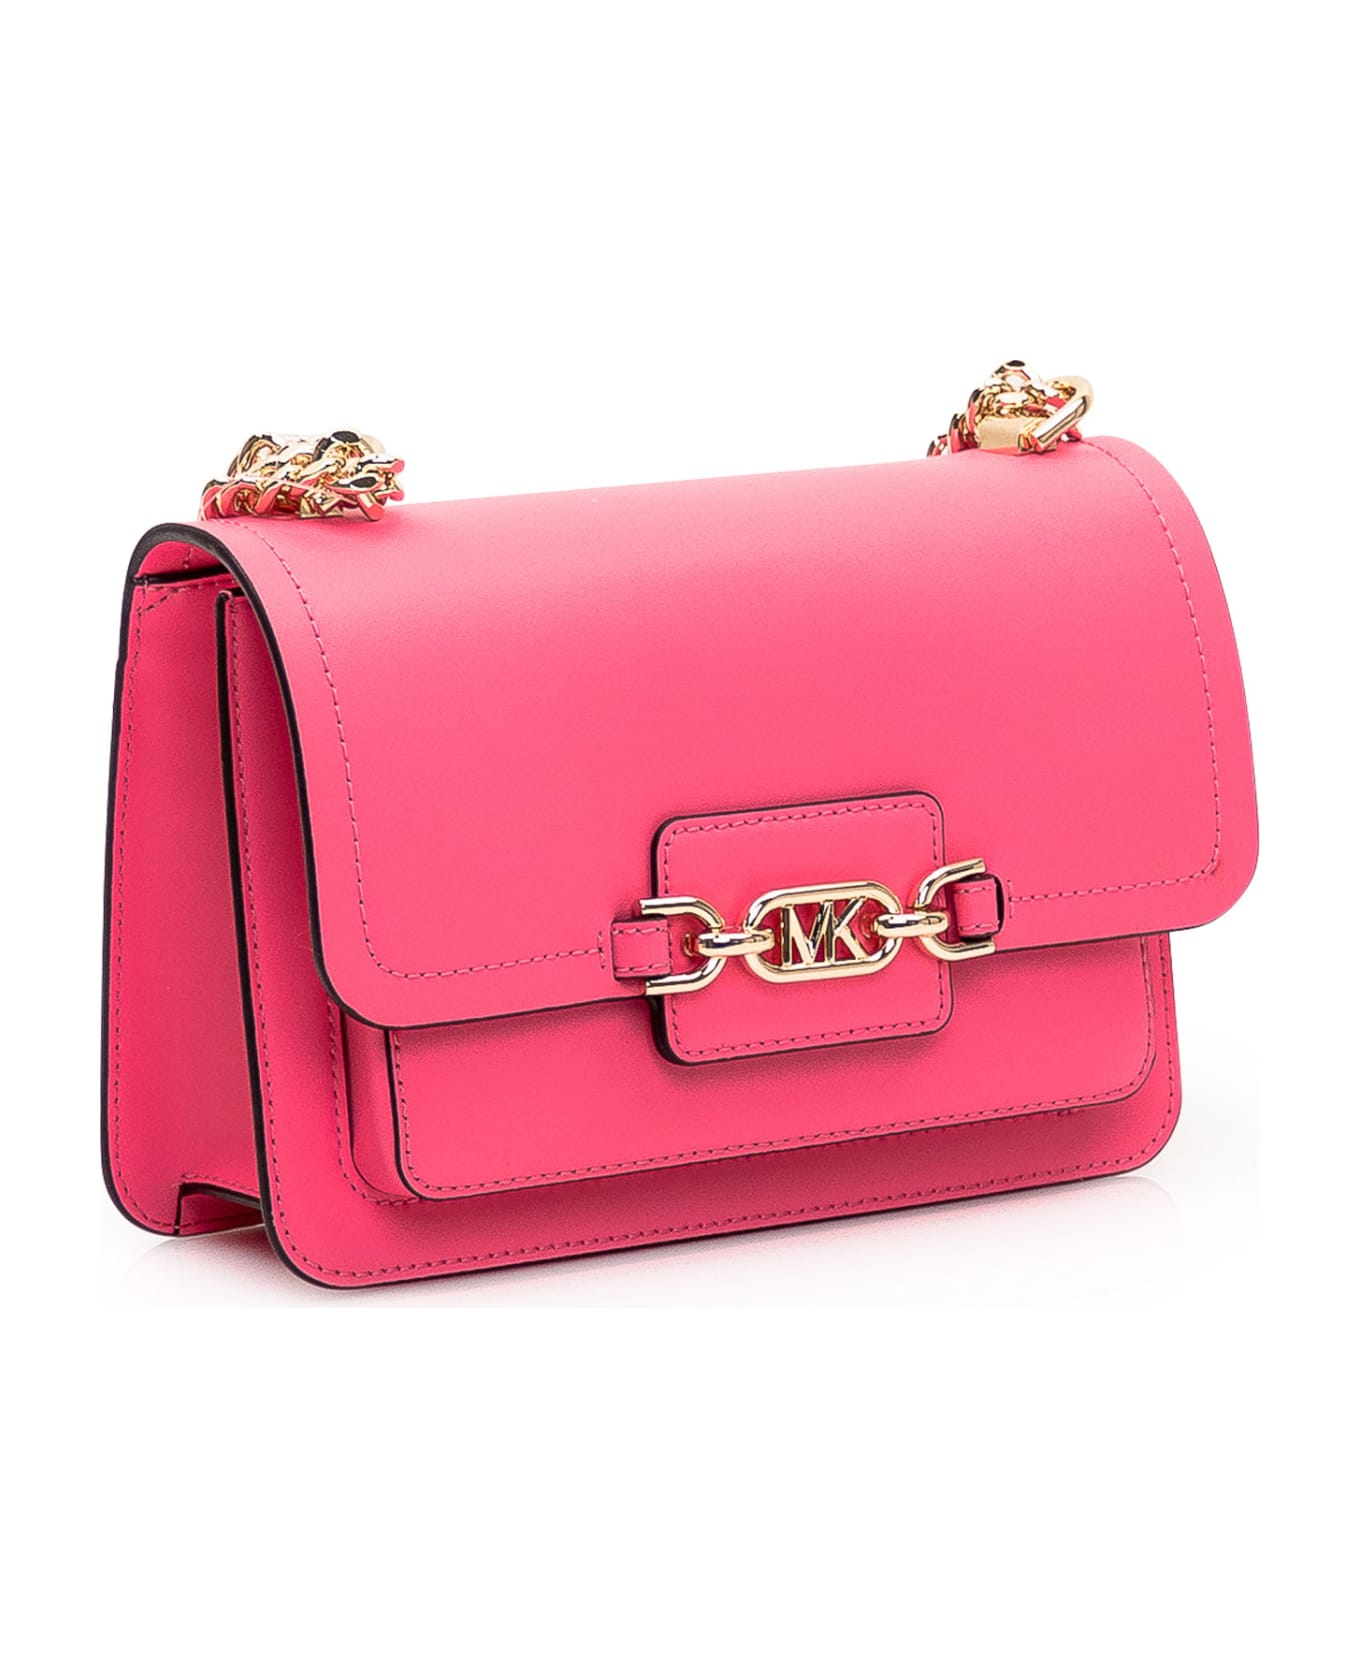 Michael Kors Heather Shoulder Bag - Pink